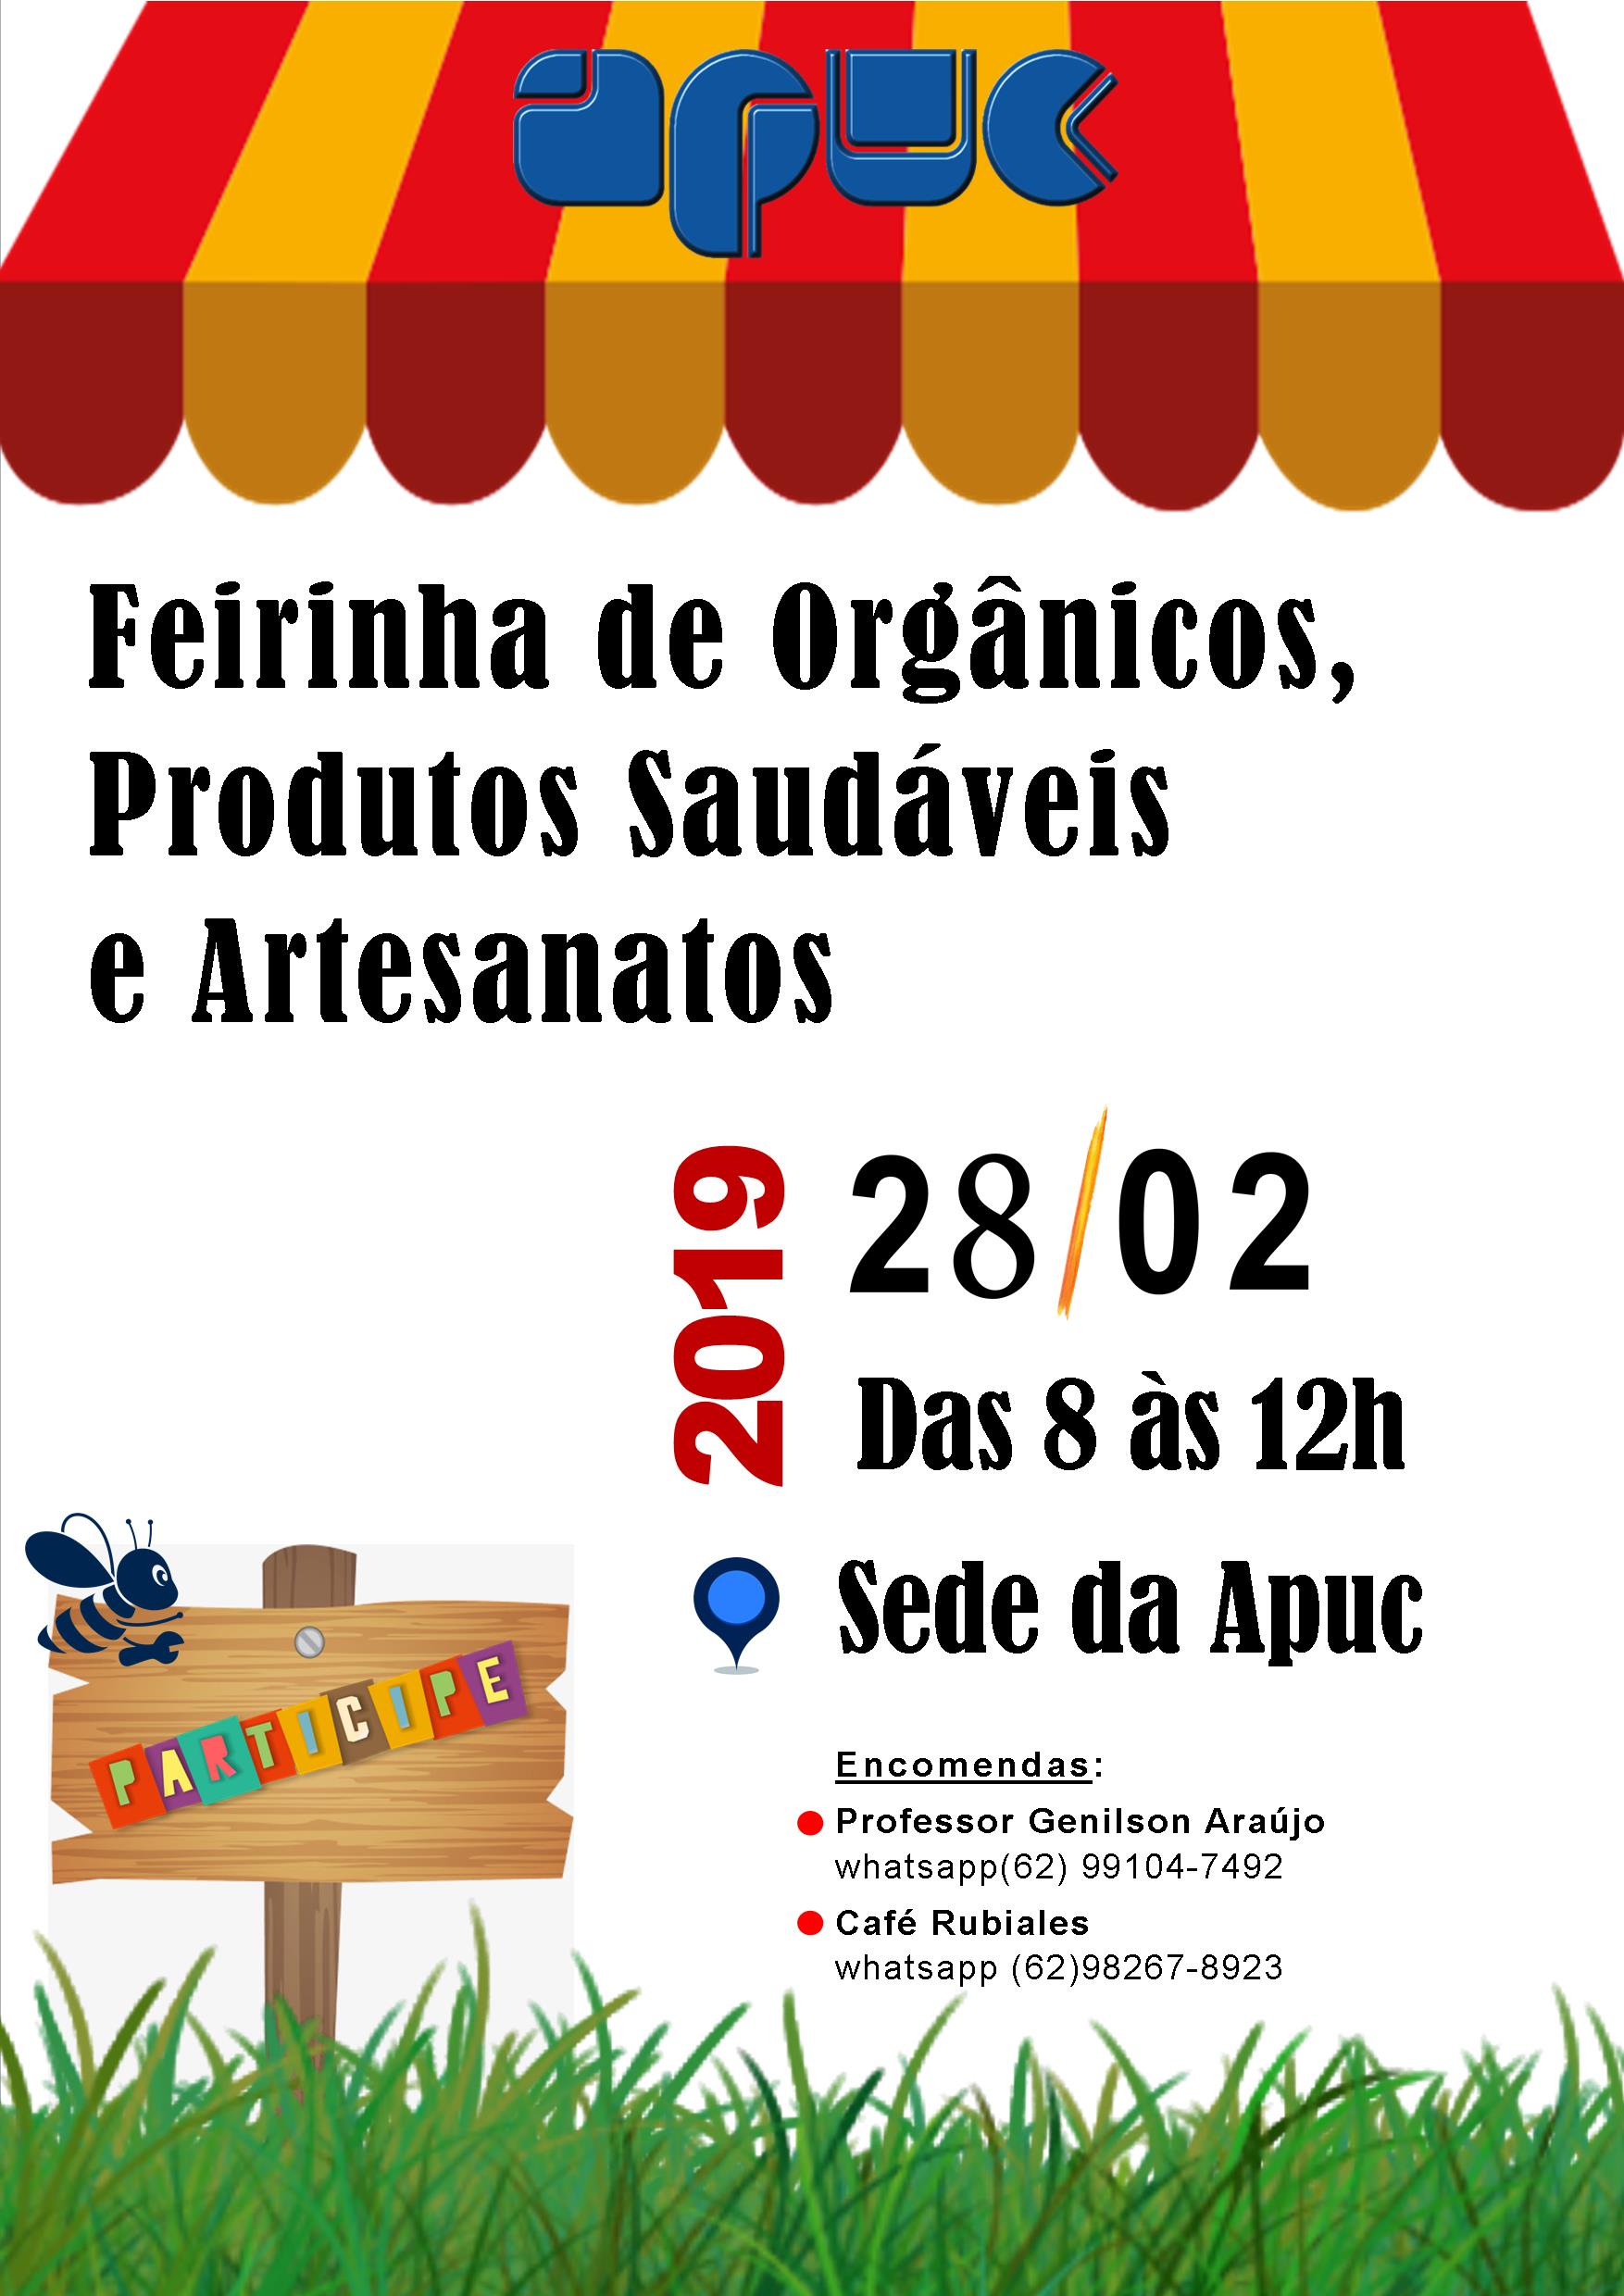 07.02.2019 Feirinha de Organicos Produtos Saudaveis e Artesanatos b